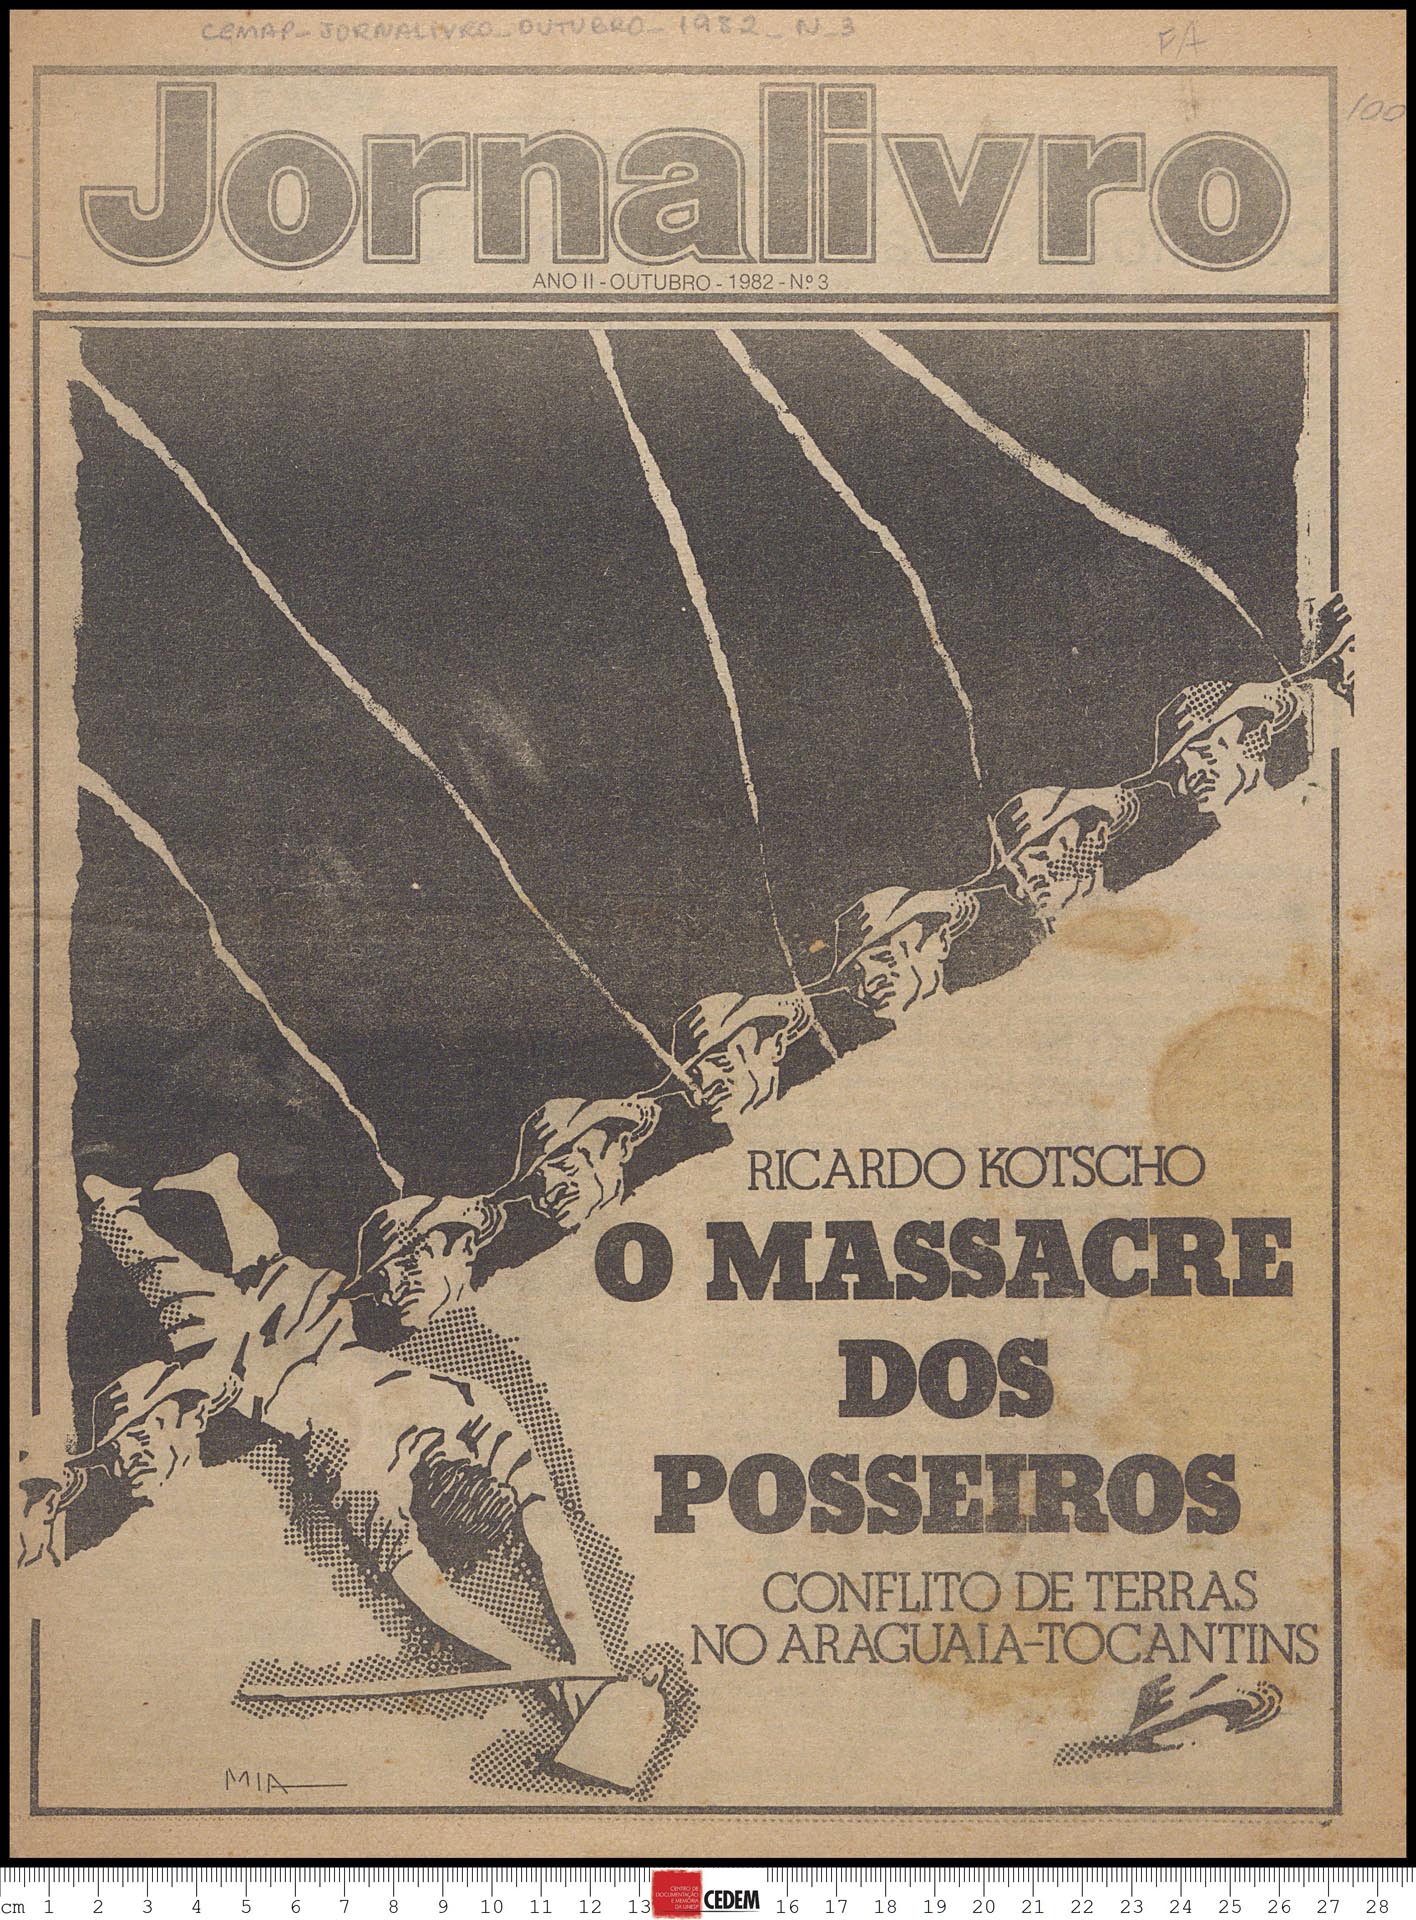 Jornalivro - 3 - out. 1982